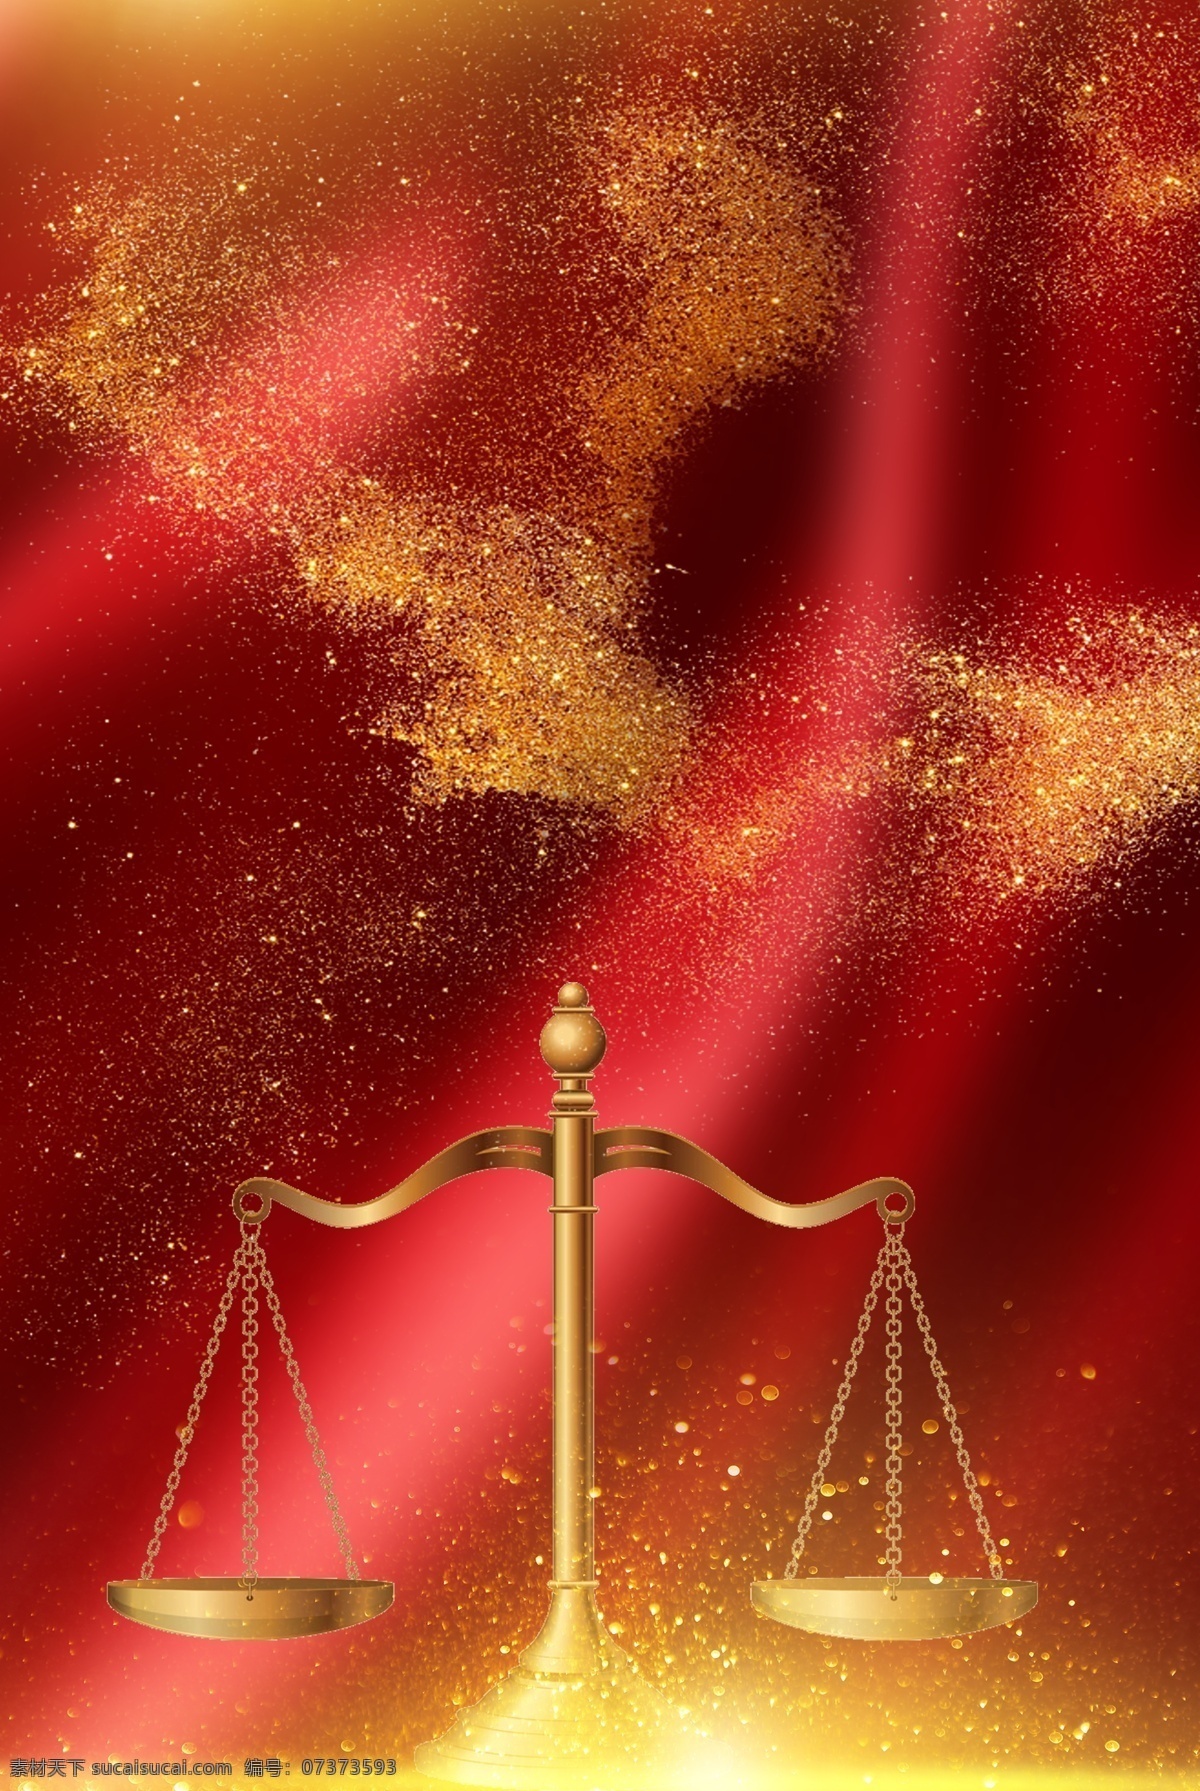 法律 日 天 秤 红色 金粉 背景 法律日 天秤 法律日背景